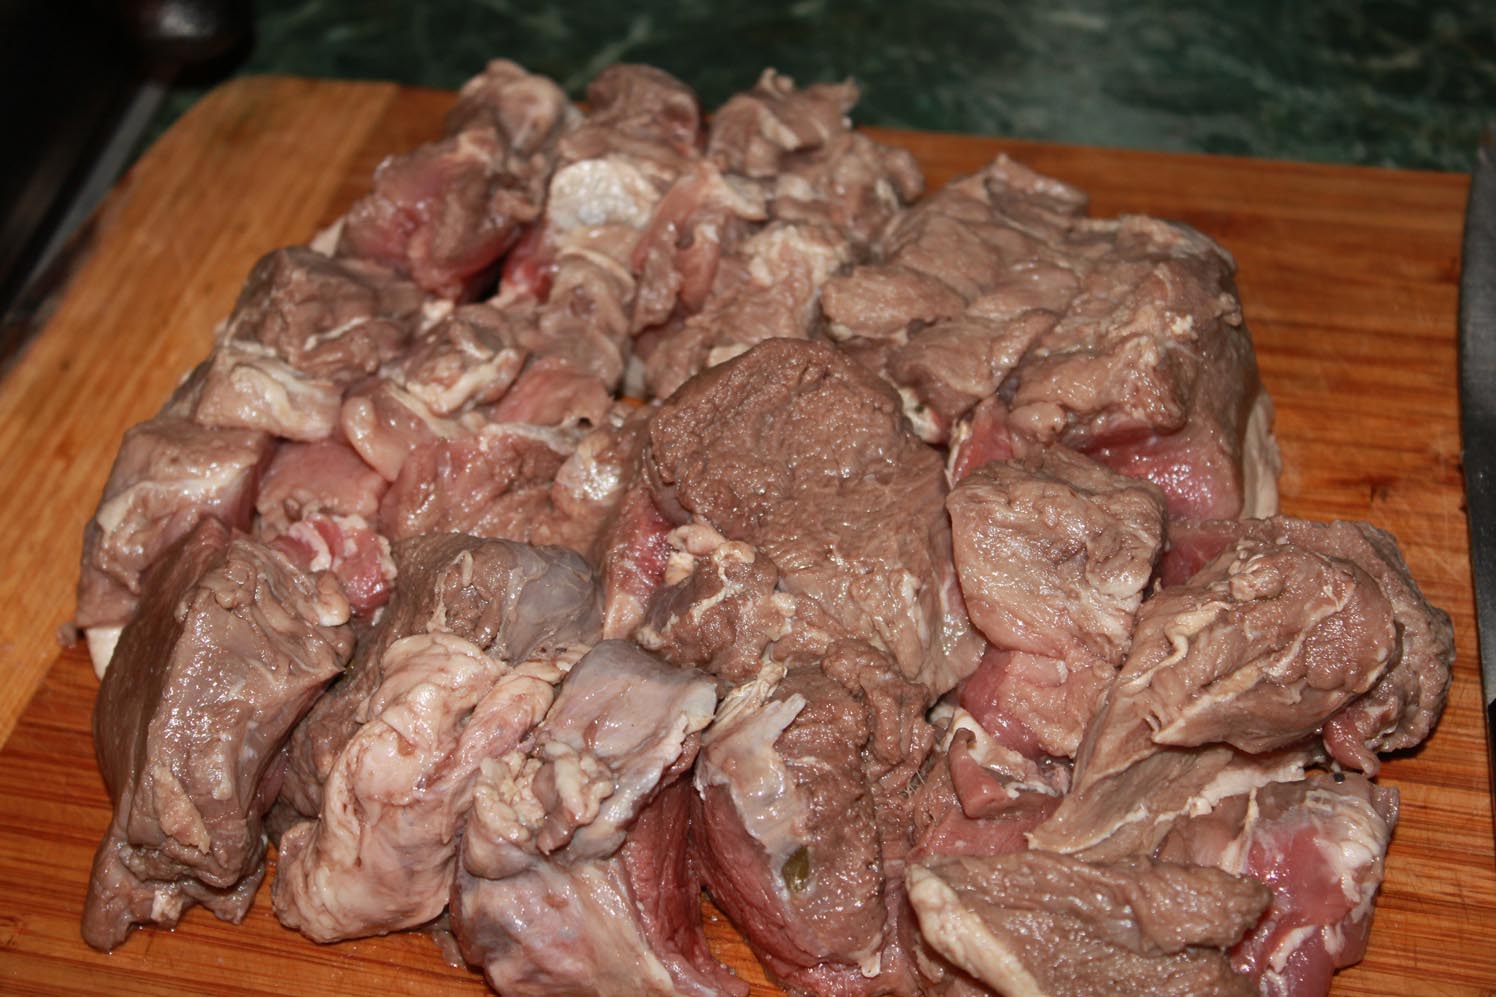  охотничья кухня, охотничья культура, охота, как готовить дичь,  как готовить охотничьи блюда, русская охотничья кухня, европейская охотничья кухня, кабанятина, мясо кабана, как готовить мясо кабана